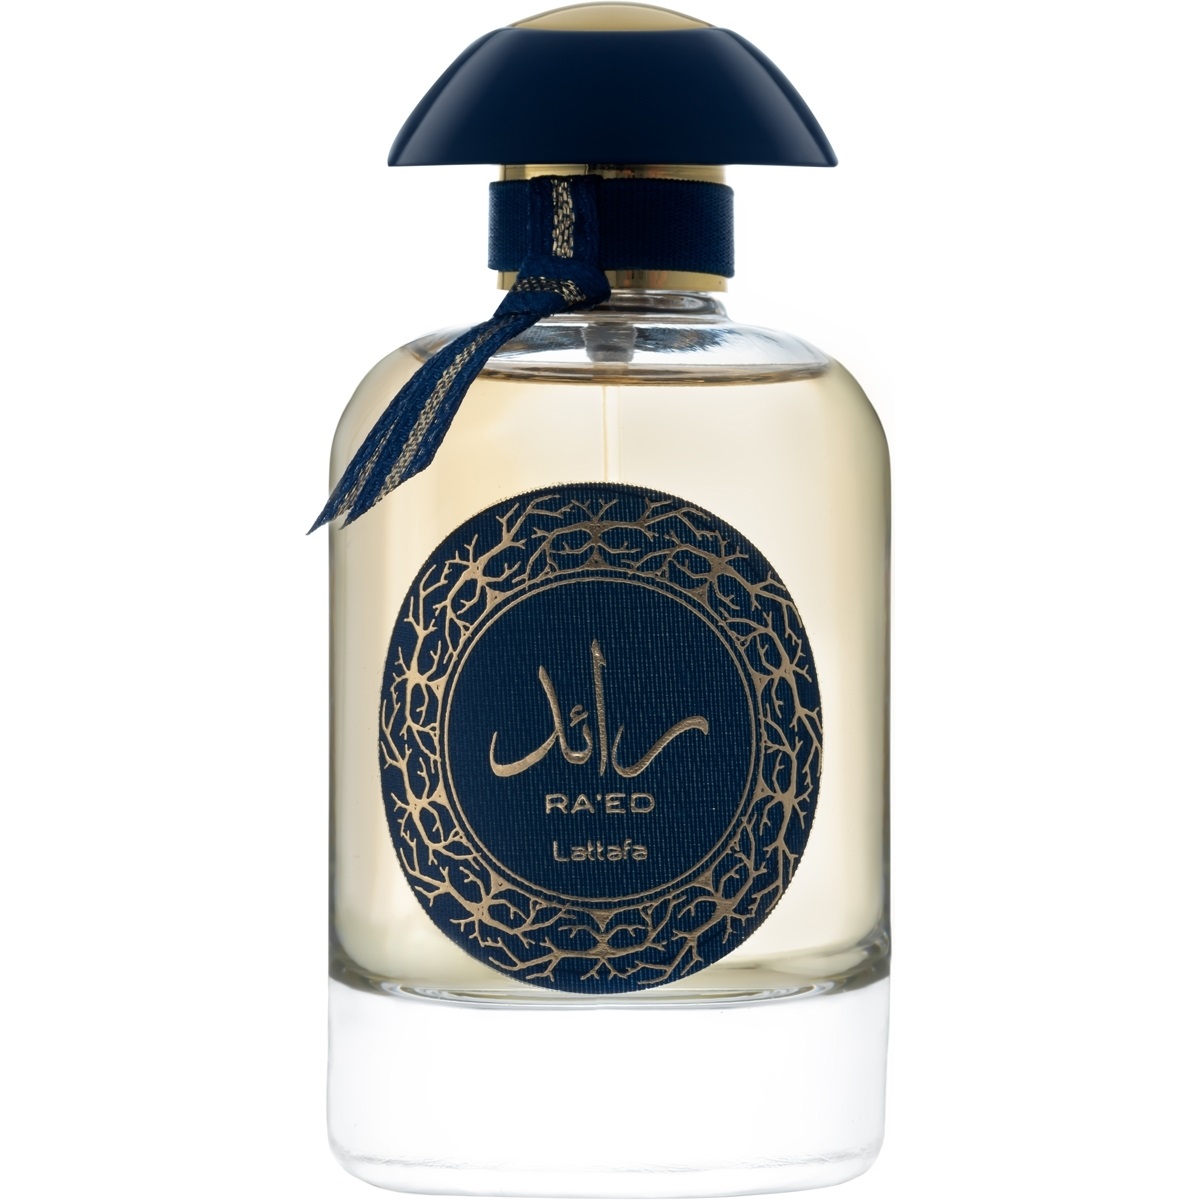 Teriaq lattafa perfumes. Lattafa Perfumes ra’ed Luxe. Ra'ed Luxe Lattafa Perfumes 100ml. Lattafa (Латтафа) - ra'ed. Raed Luxe духи Lattafa.